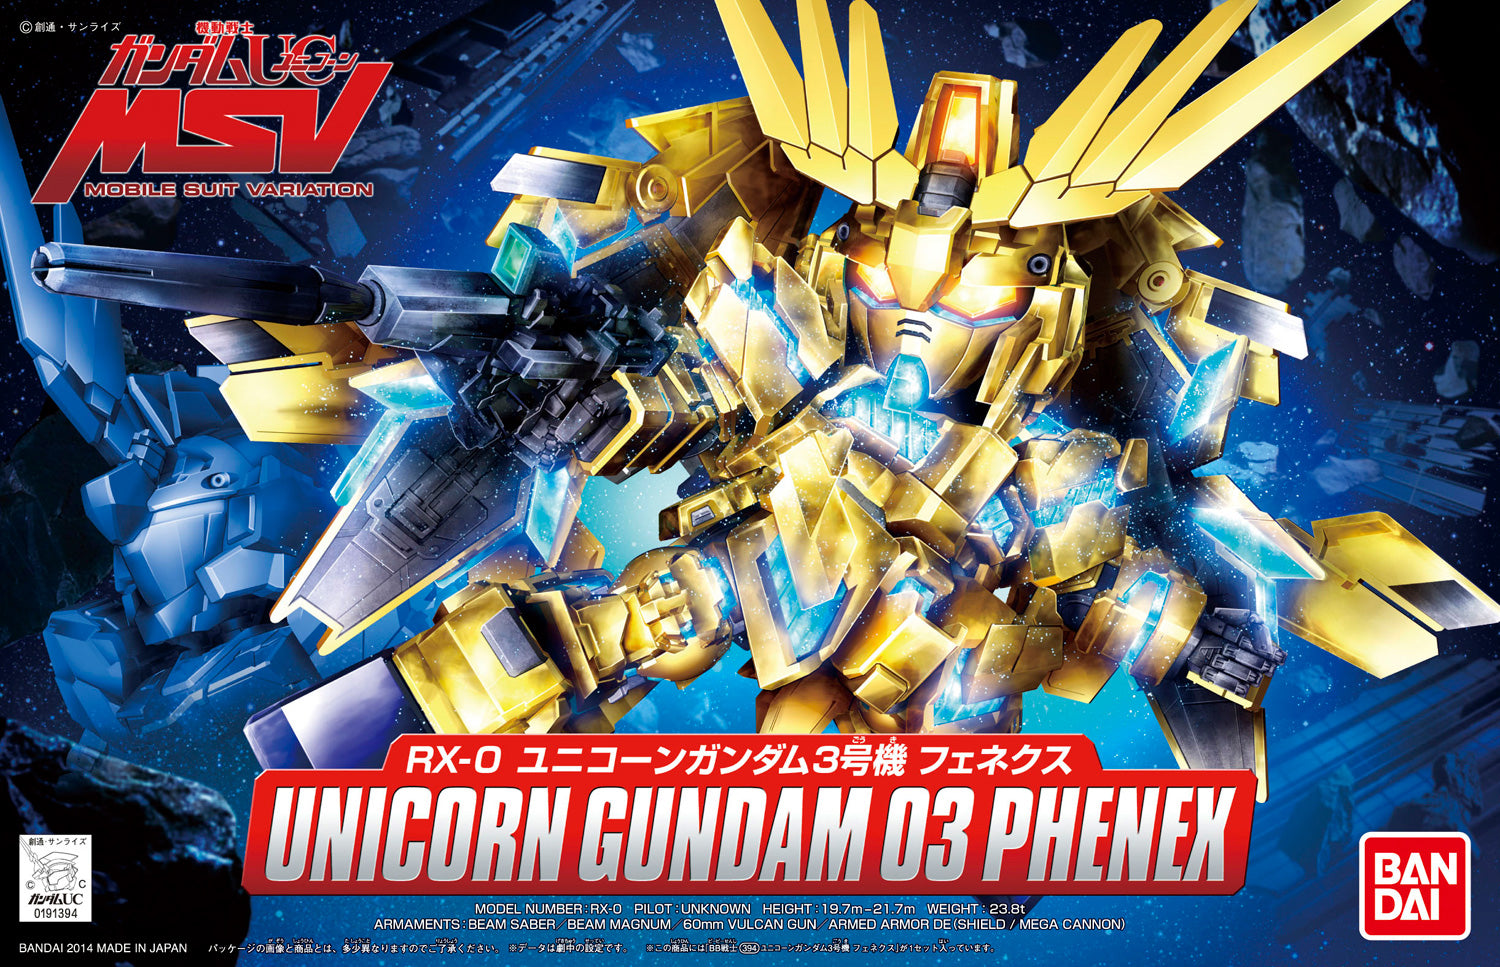 SD Gundam BB Senshi Unicorn Gundam 03 Phenex